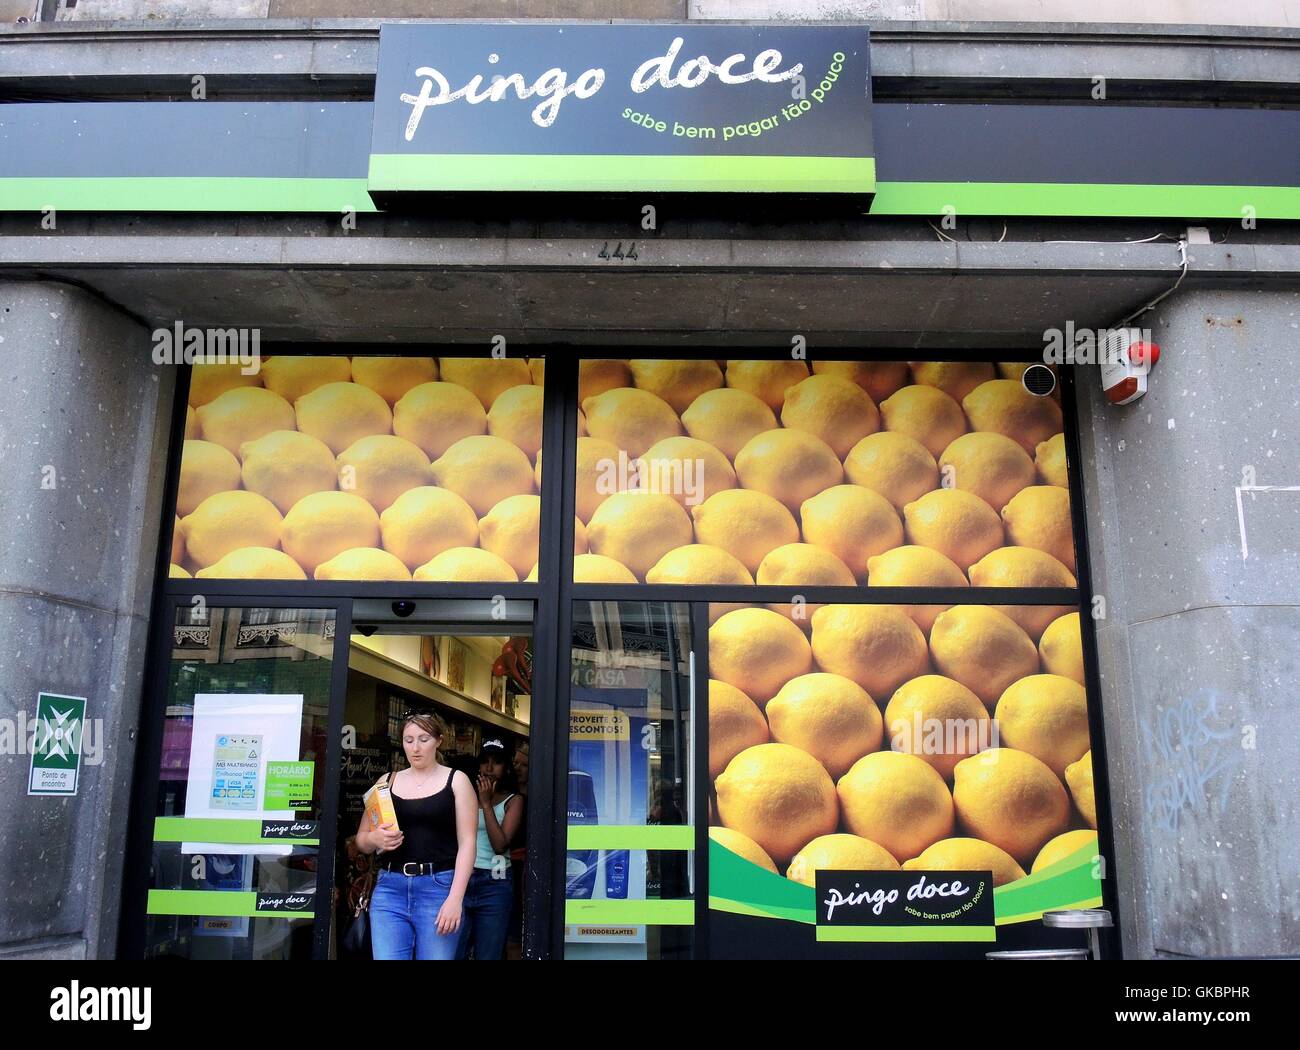 Una mujer sale de una tienda de la cadena de supermercados portuguesa  "Pingo Doce" en Oporto (Portugal). Pingo Doce es la segunda mayor cadena de  supermercados en Portugal. - Junio 2016